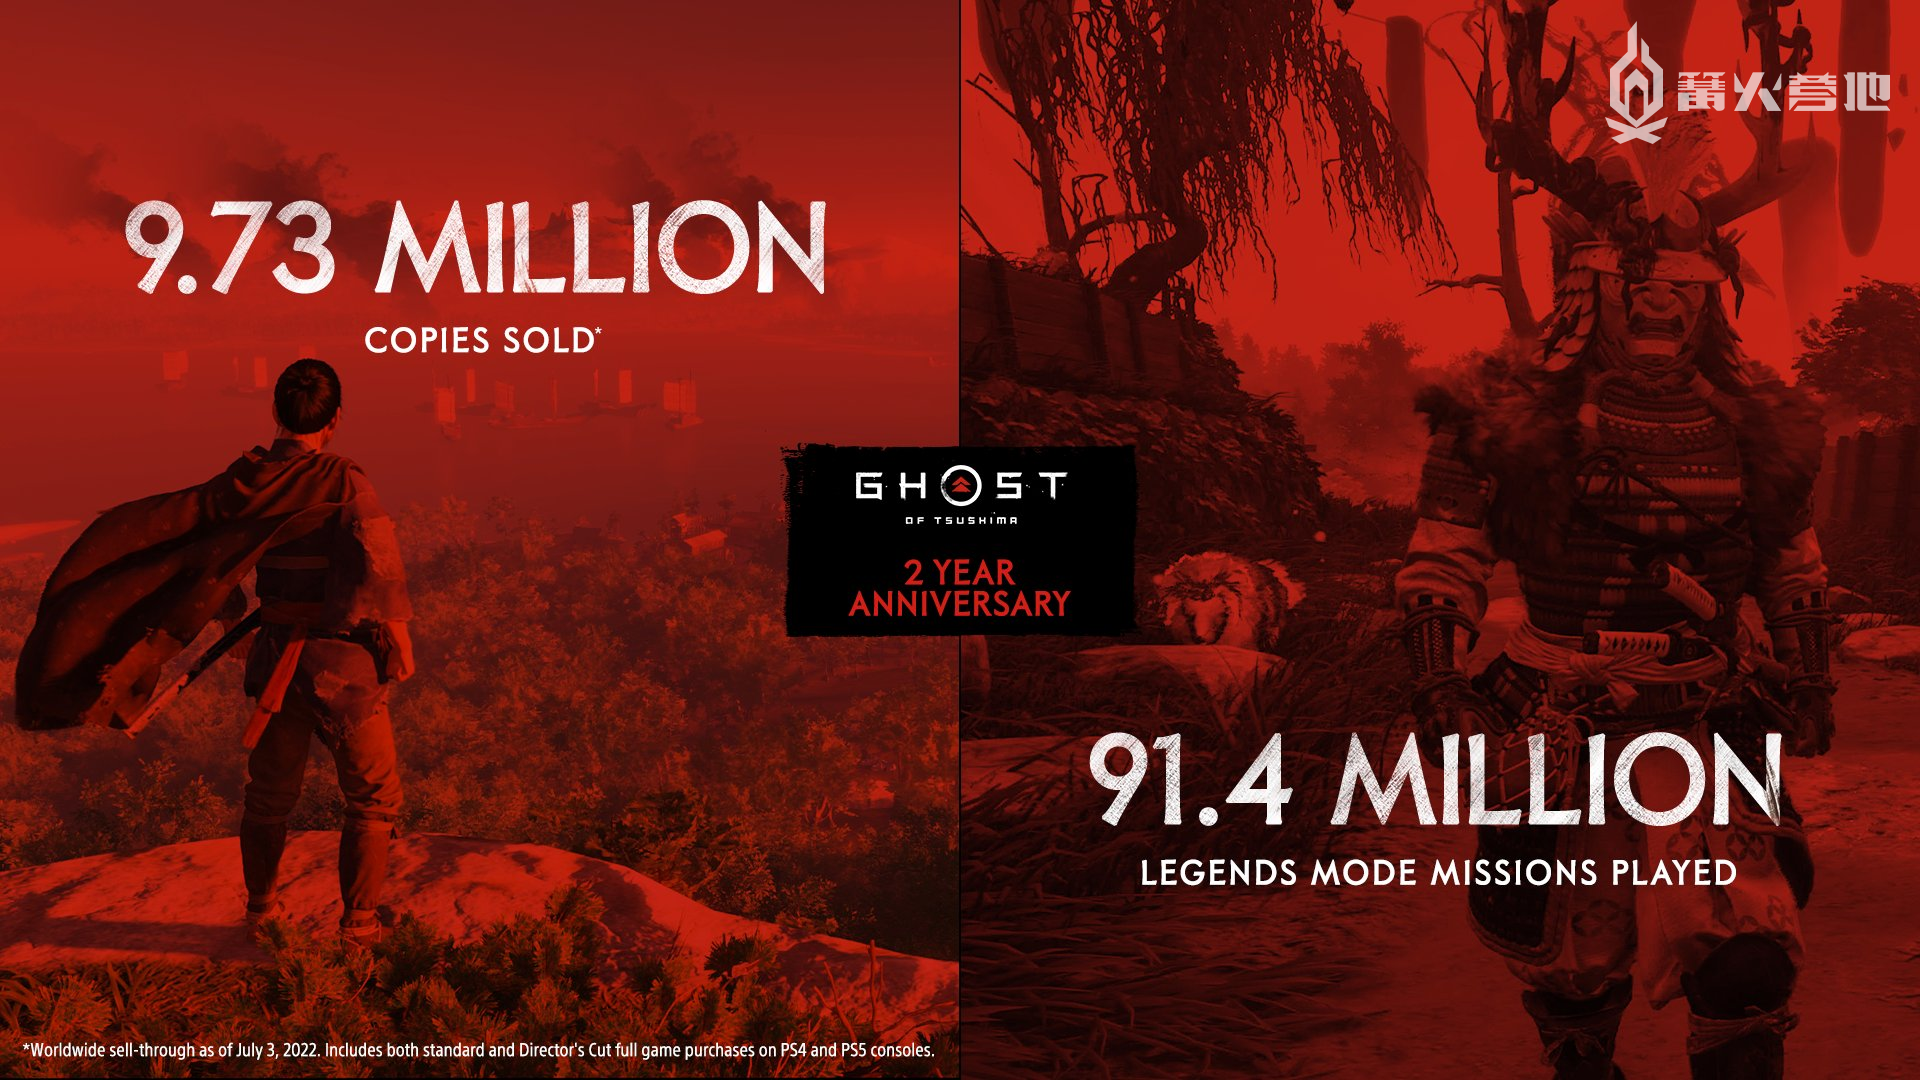 《对马岛之魂》总销量已达 973 万